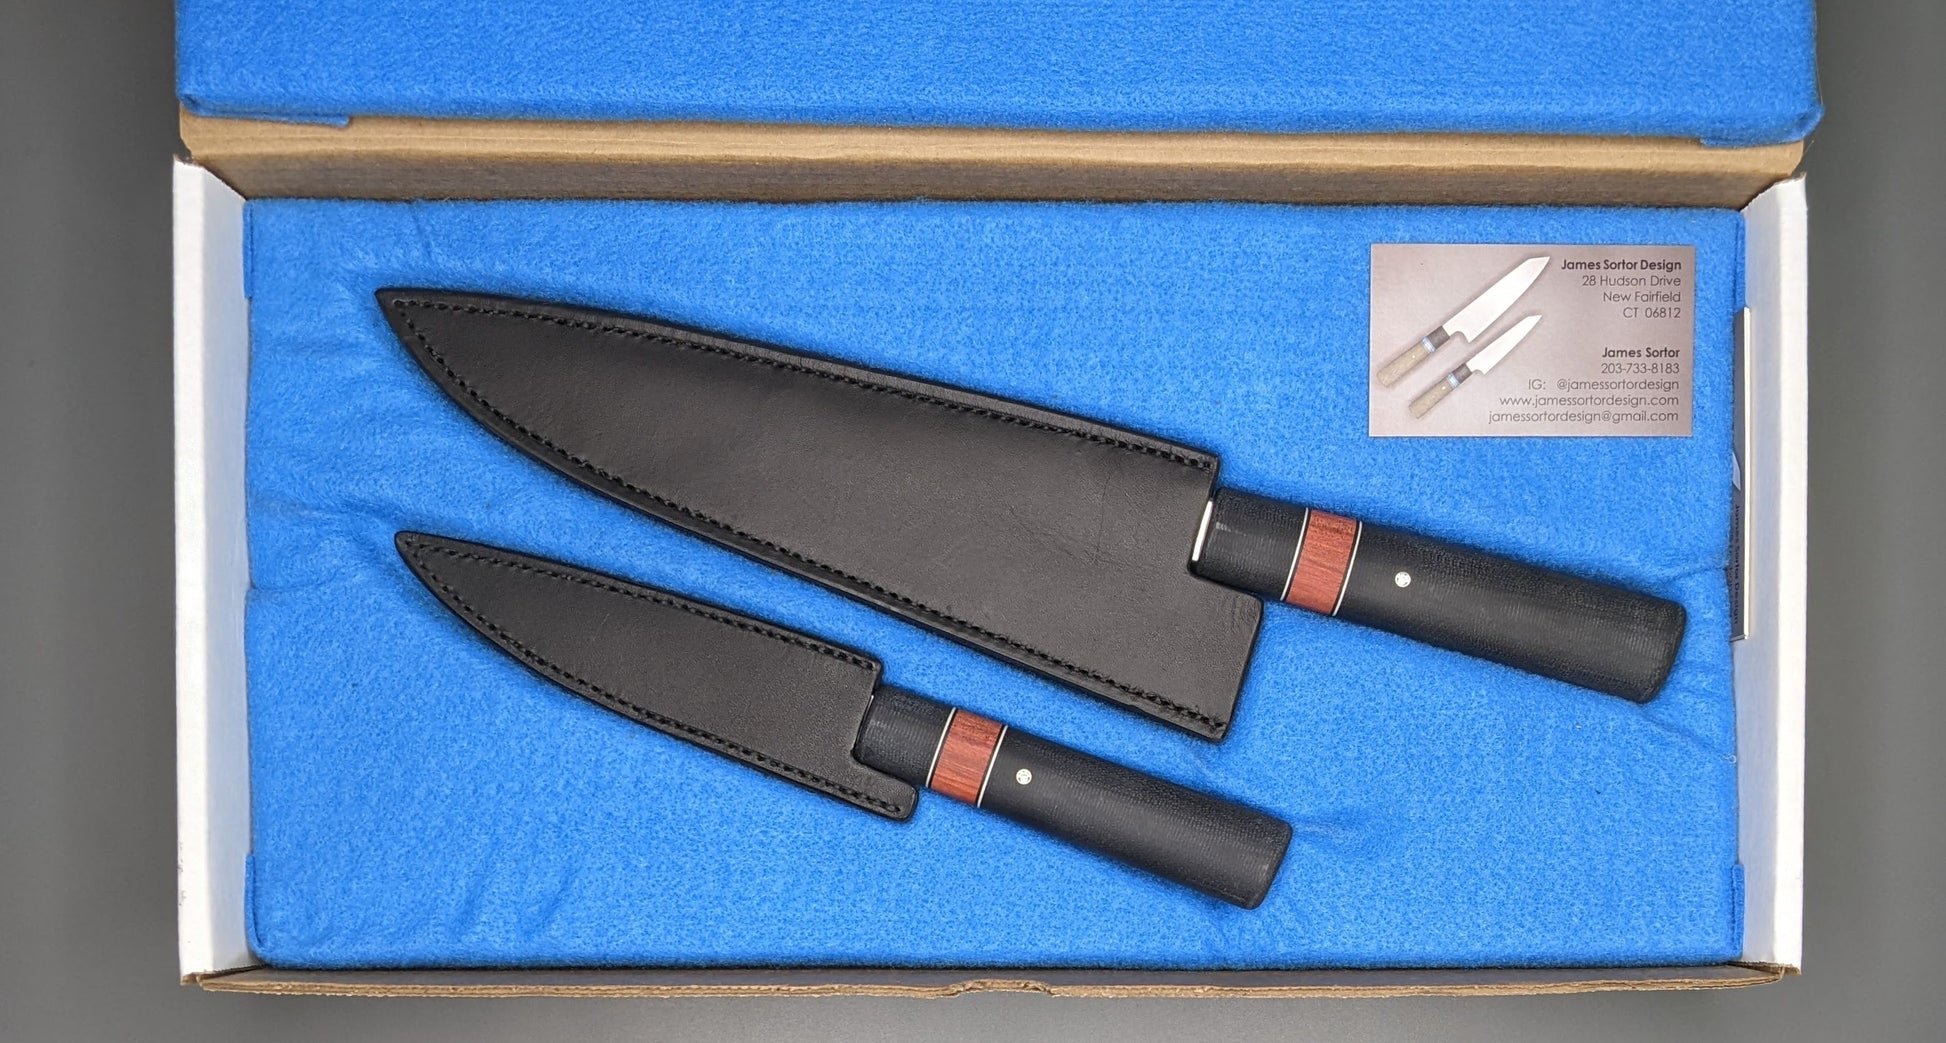 Knife gift set